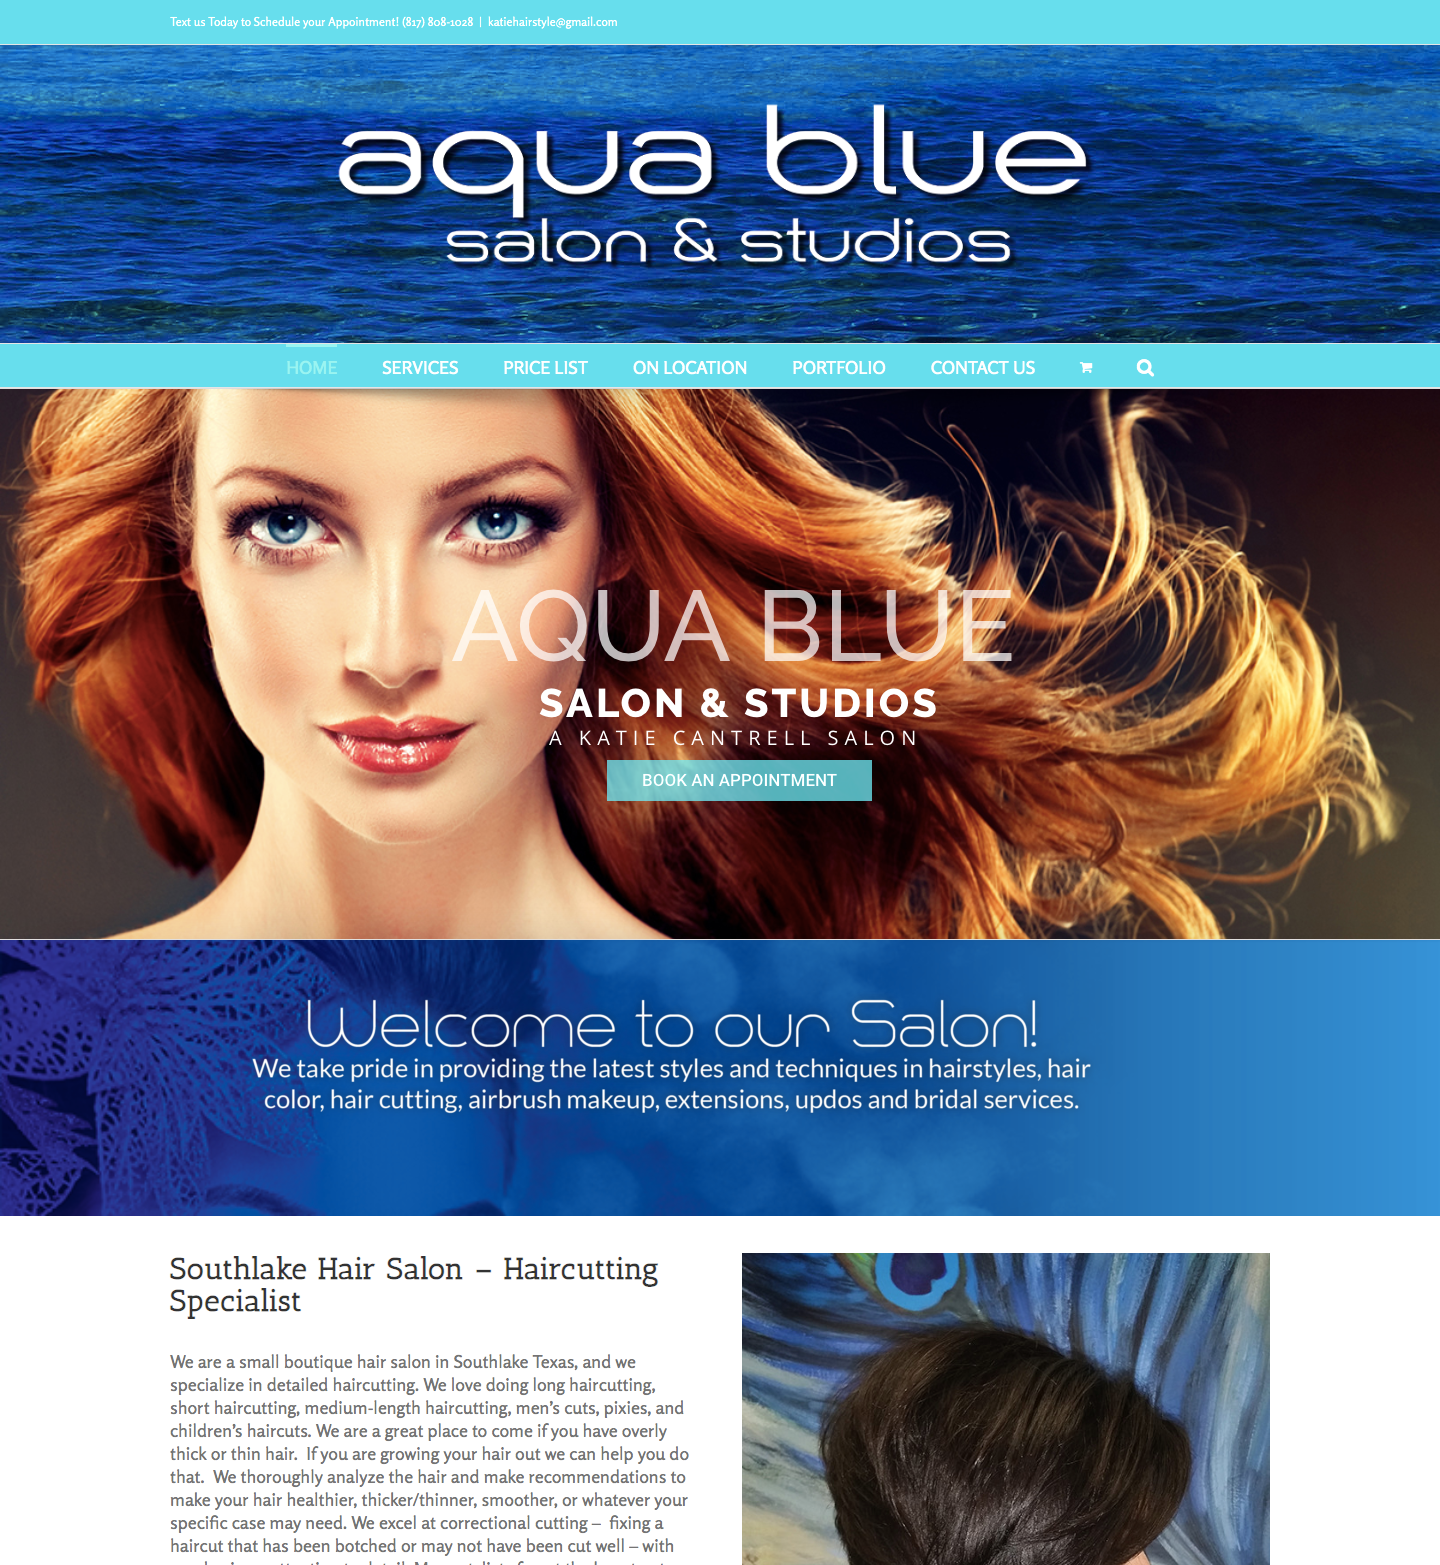 Aqua blue custom website design